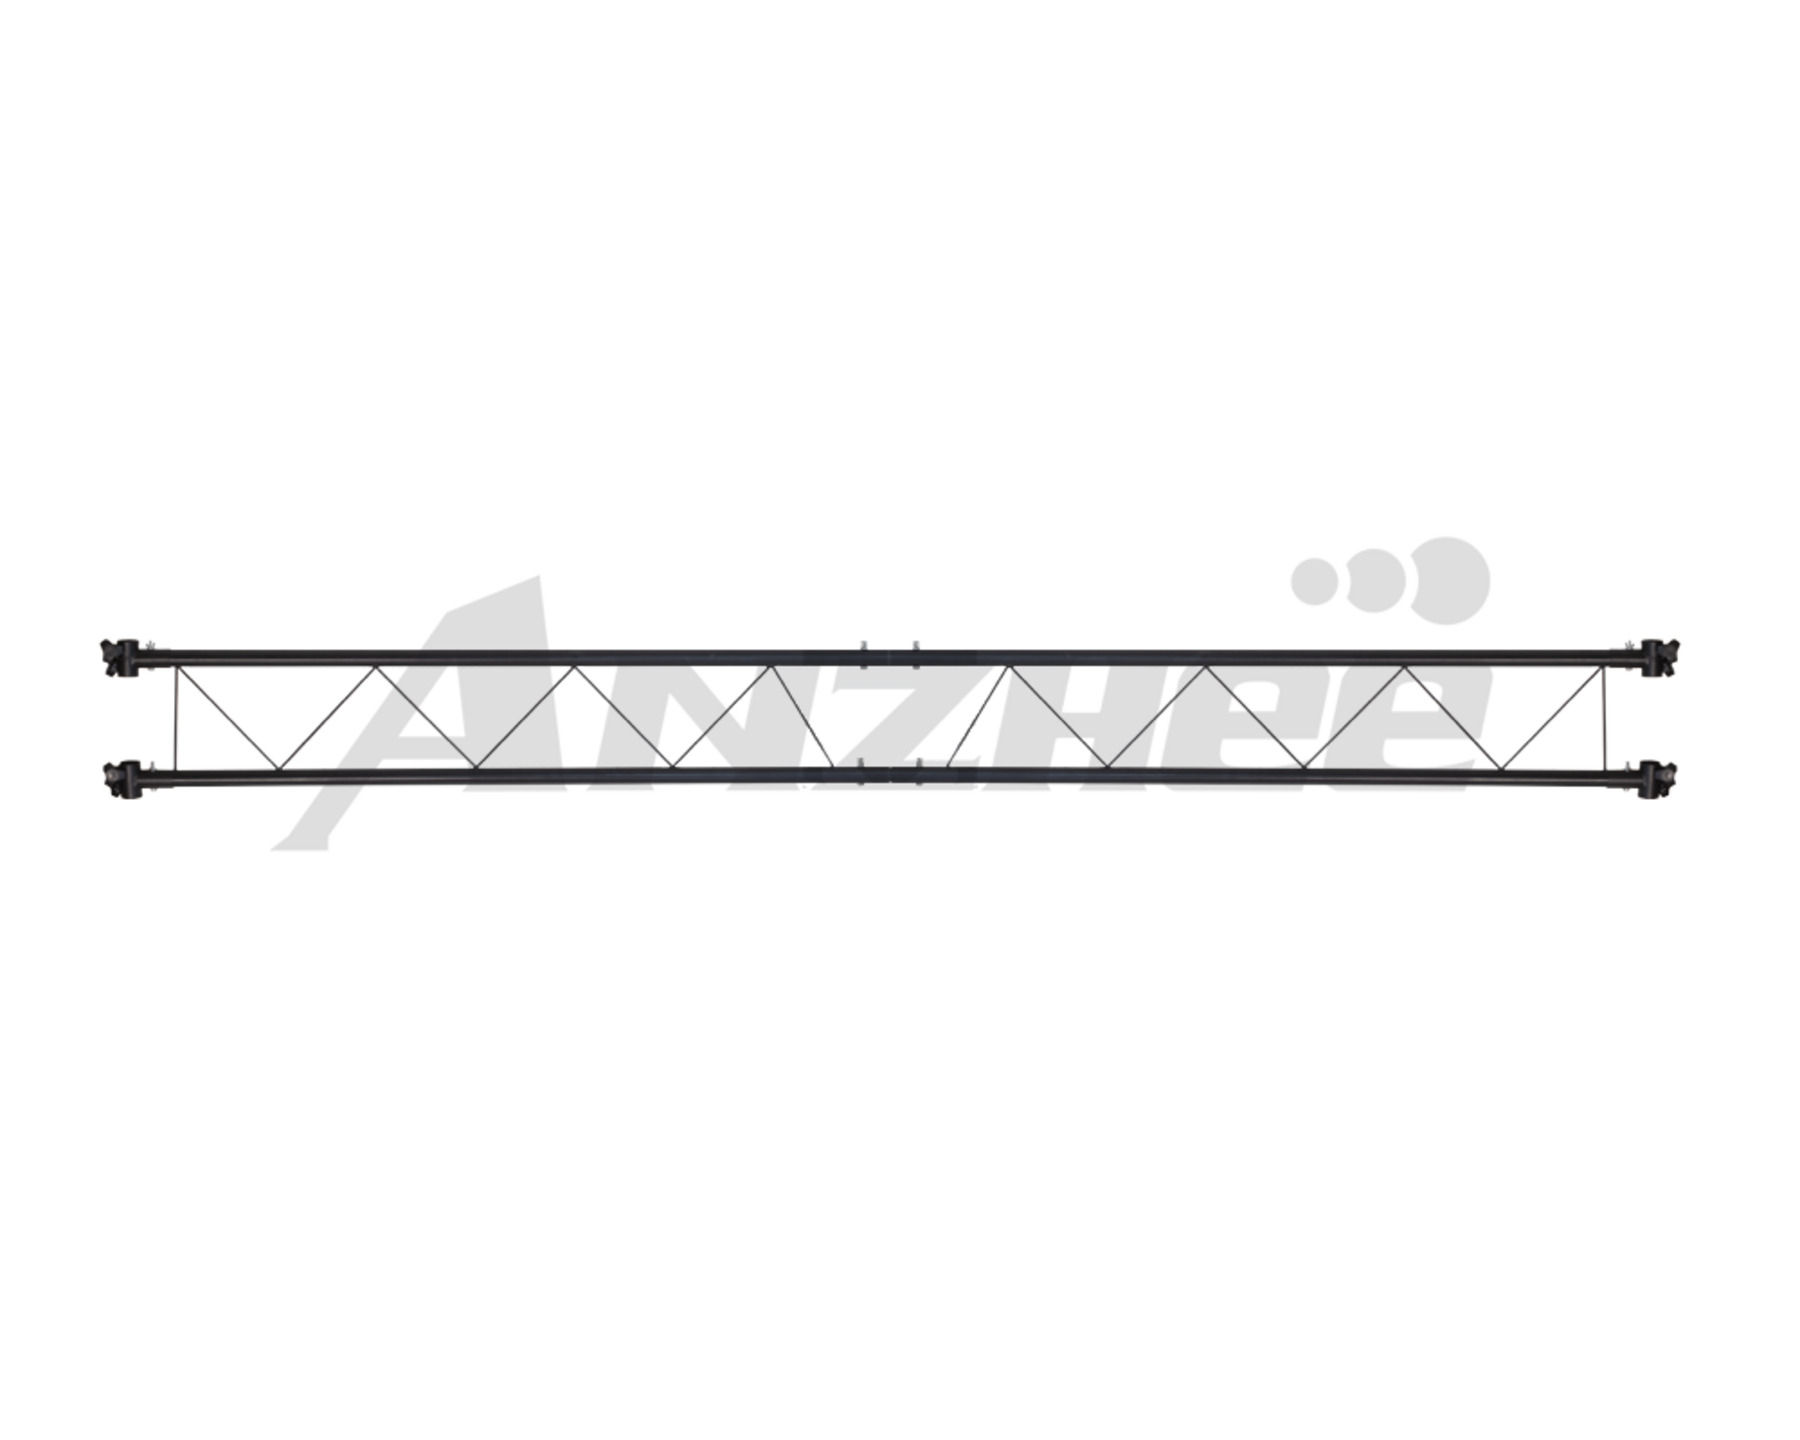 Струбцины и крепёжные элементы PROCBET Truss-Bridge kit струбцины и крепёжные элементы cameo instant fog 1700 pro flying kit для clif1700pro